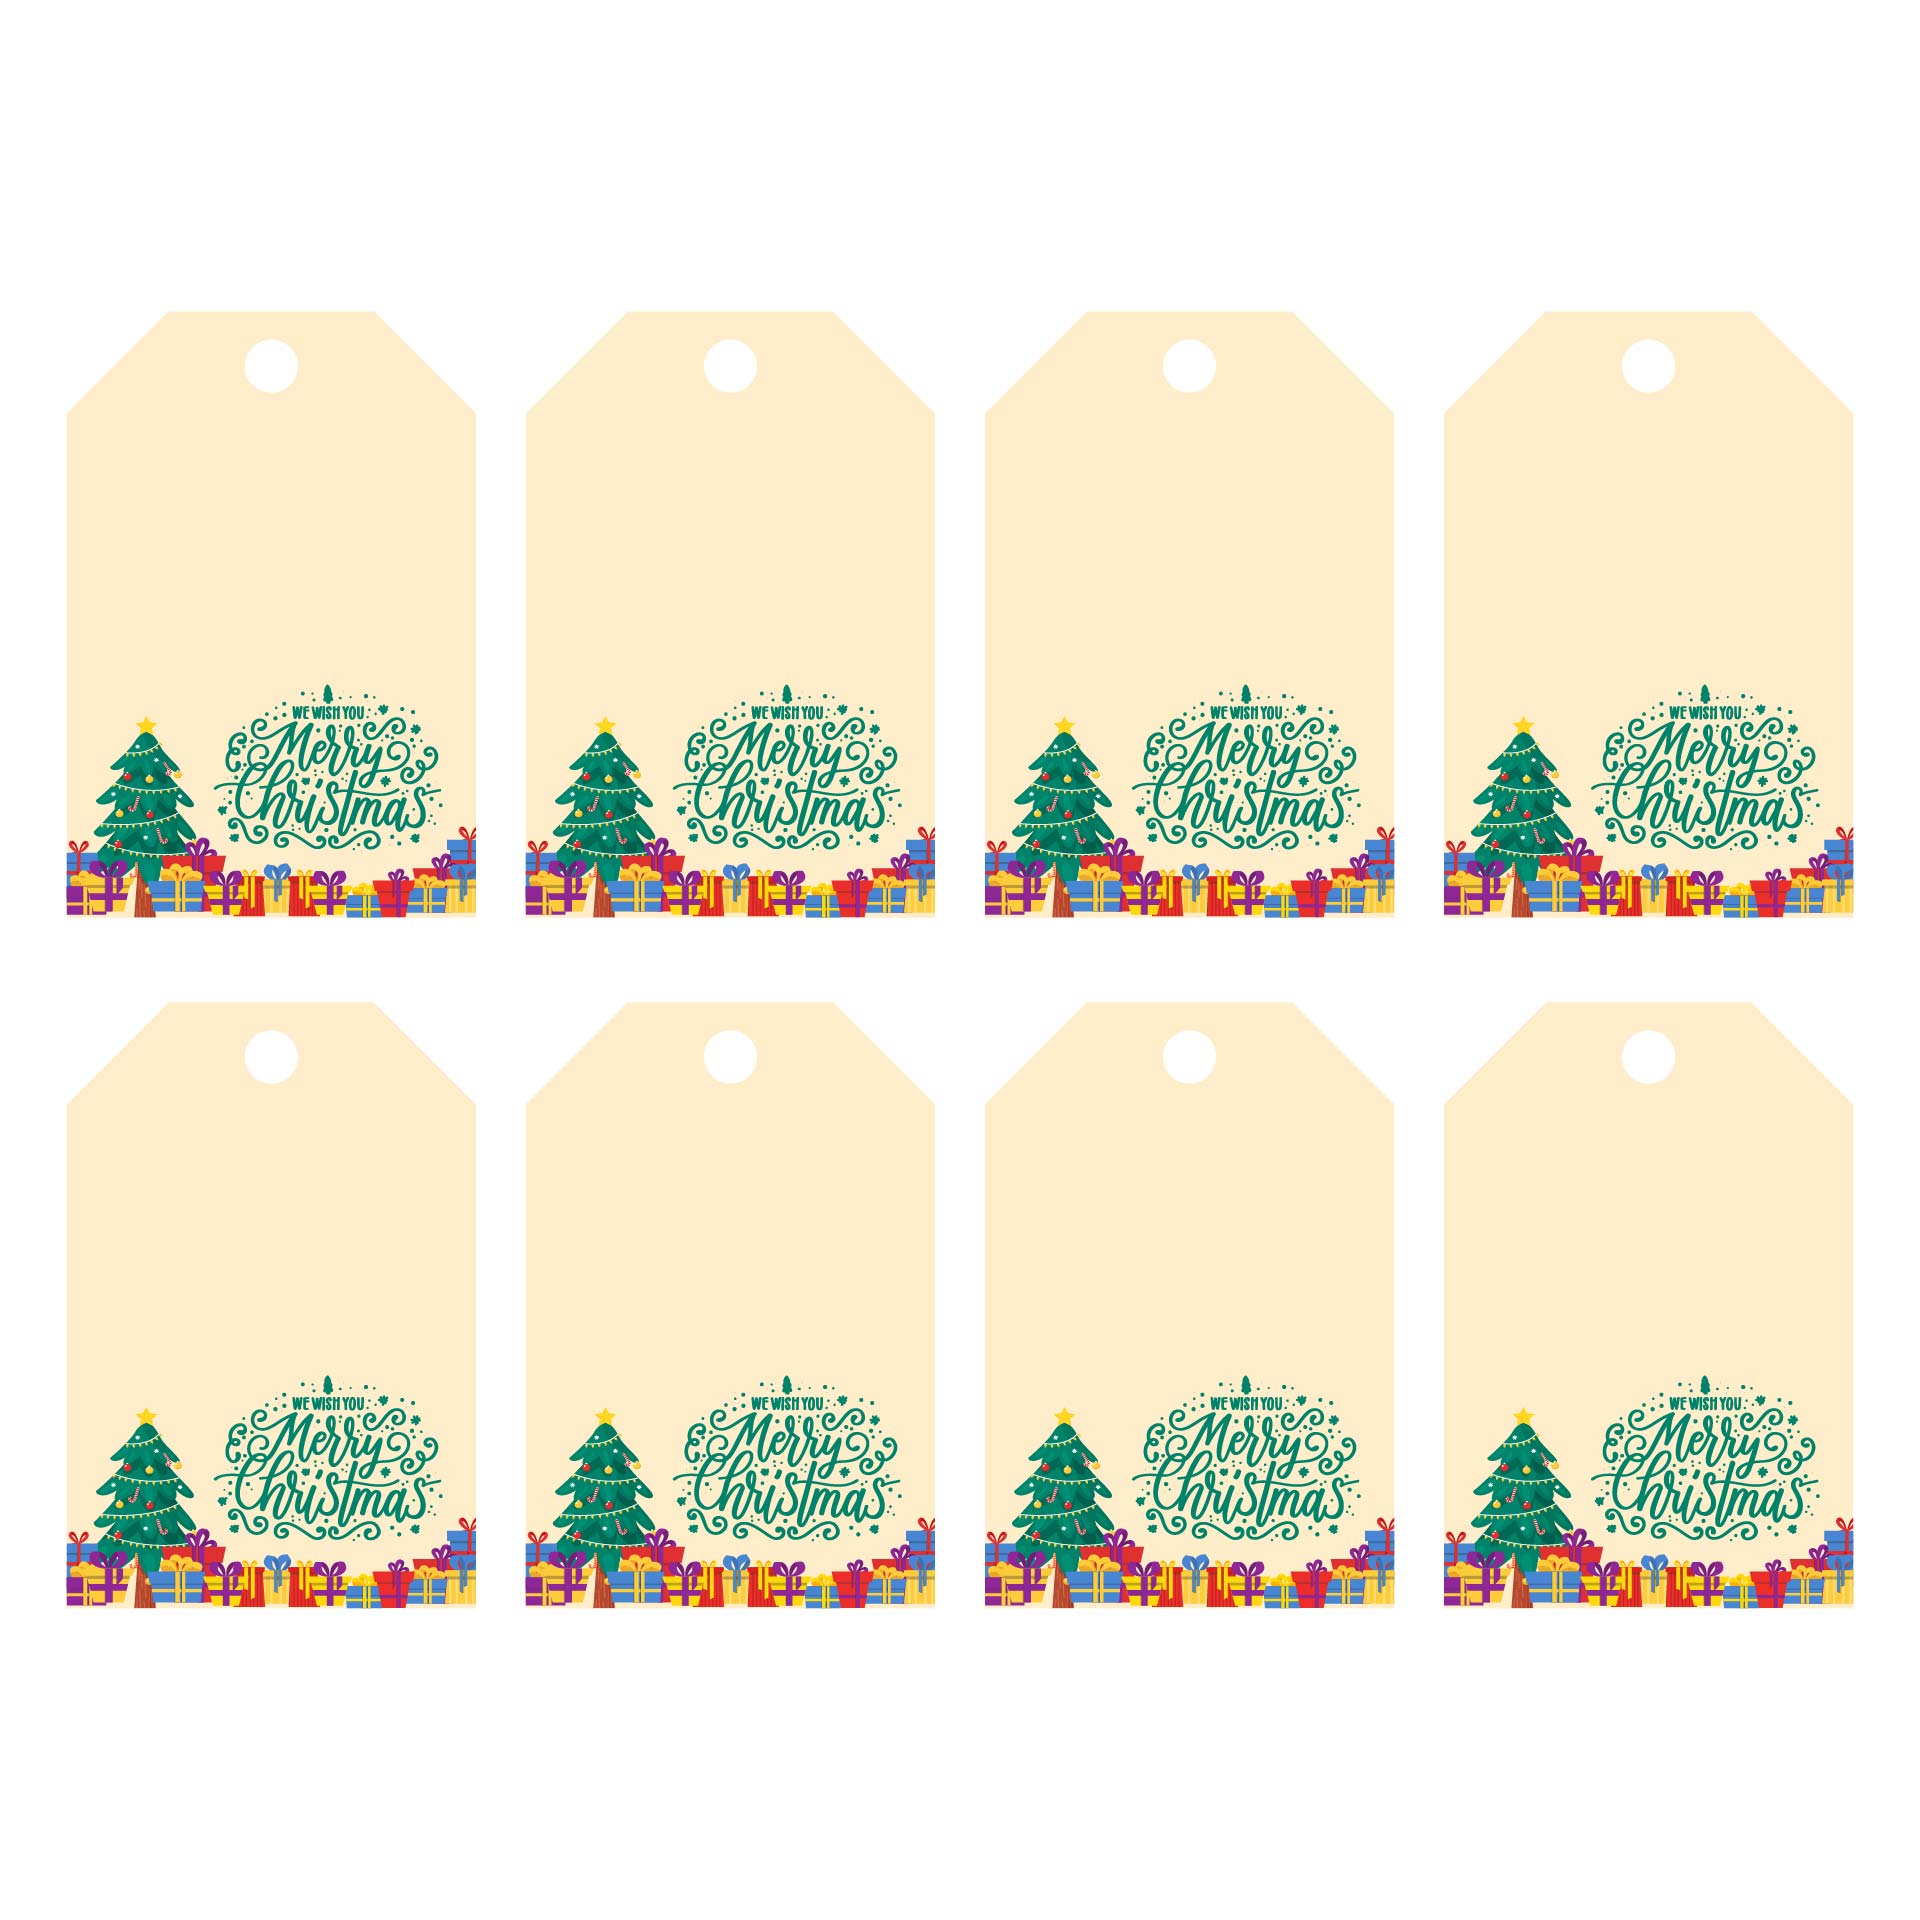 Printable Christmas Tags For Holiday Gifts